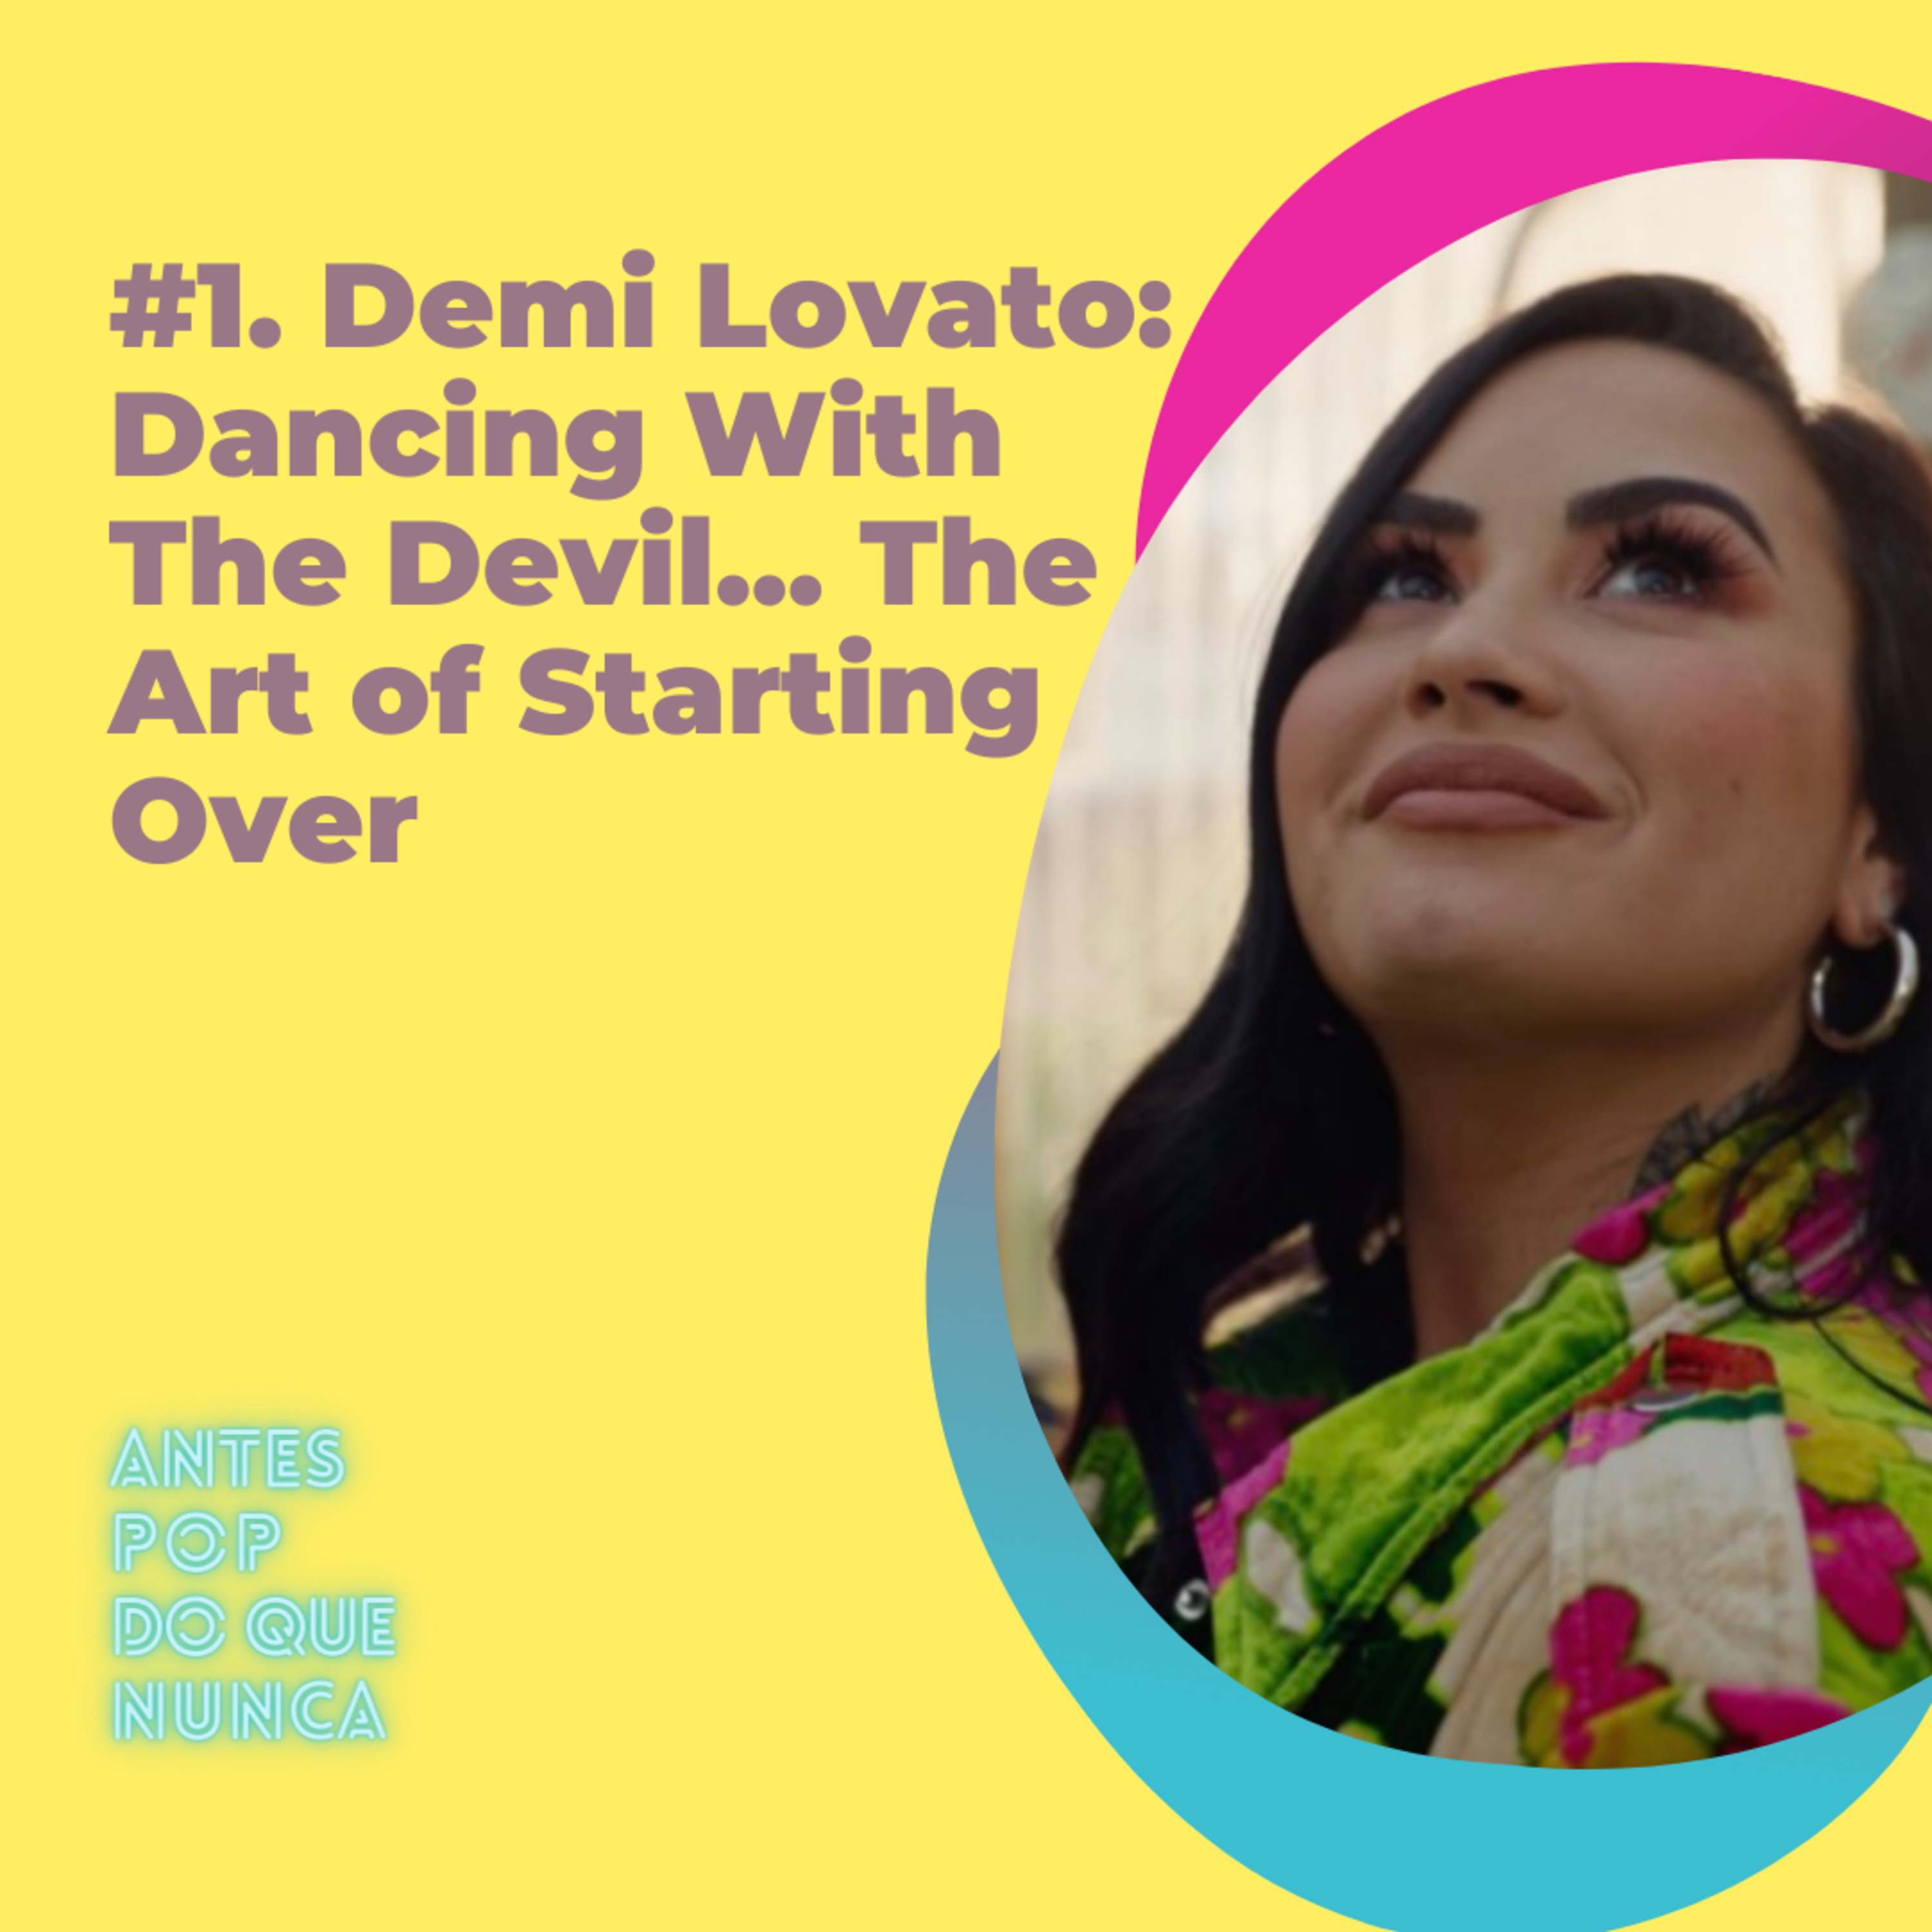 #1. Demi Lovato: 